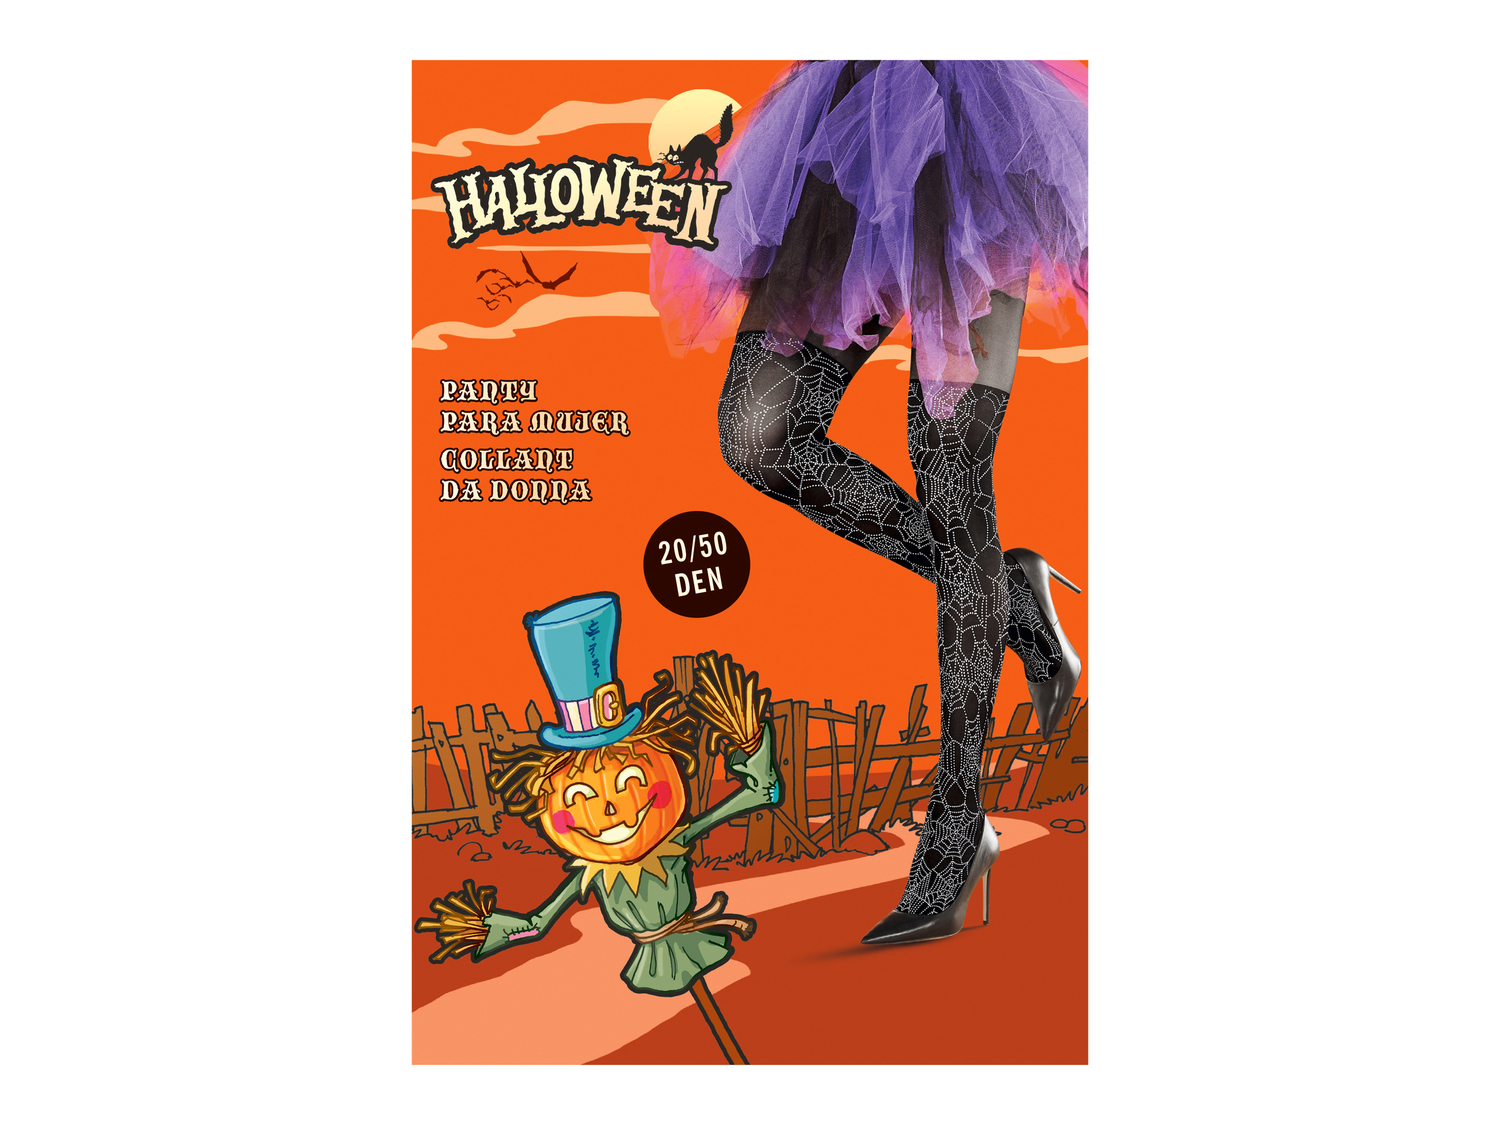 Collant di Halloween per donna Oeko-tex, prezzo 2.99 &#8364; 
Misure: S-L
Taglie ...